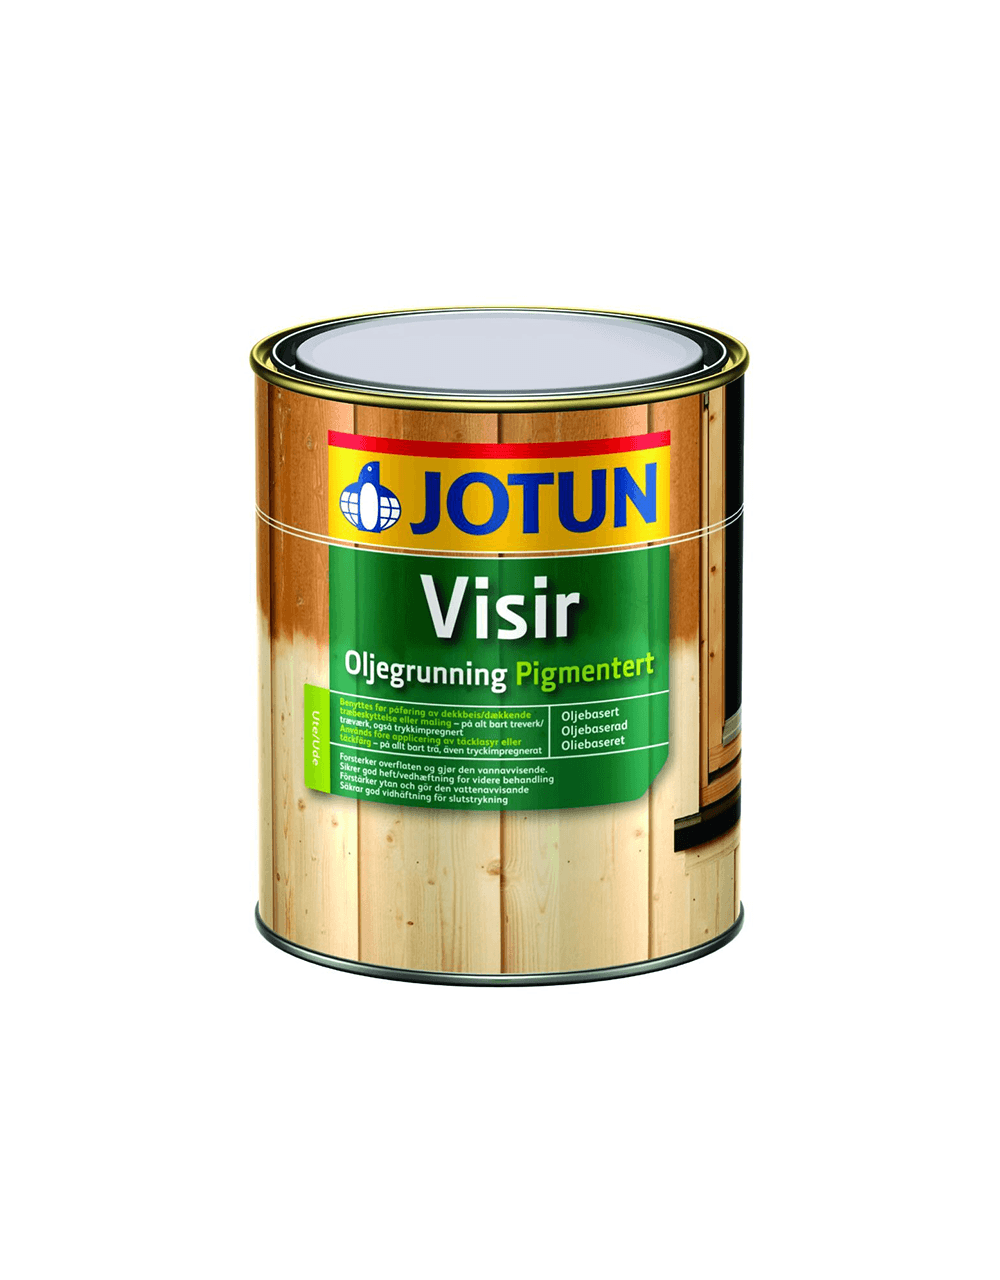 Jotun Visir Oliegrunding Pigmenteret - 0,9 L